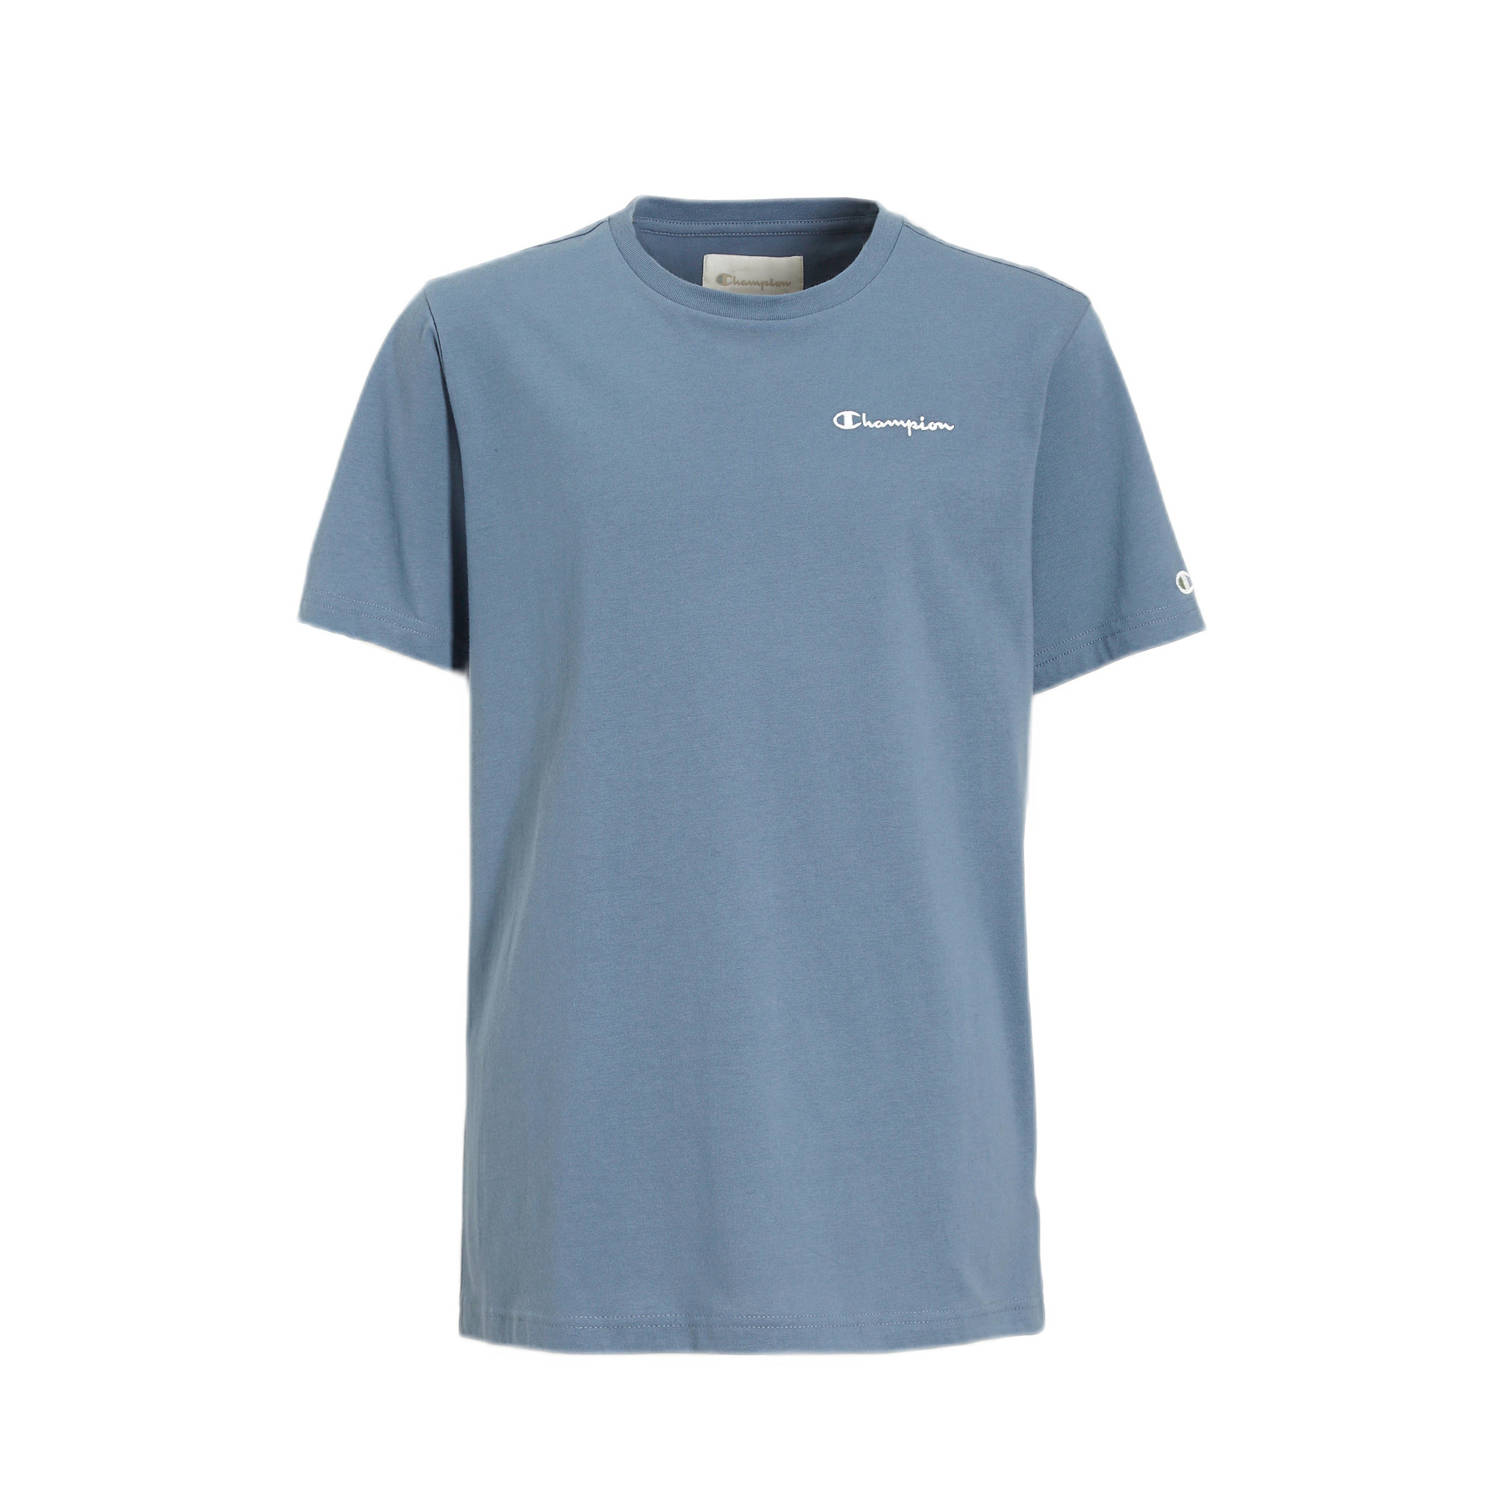 Champion T-shirt met logo grijsblauw Jongens Katoen Ronde hals 134 140